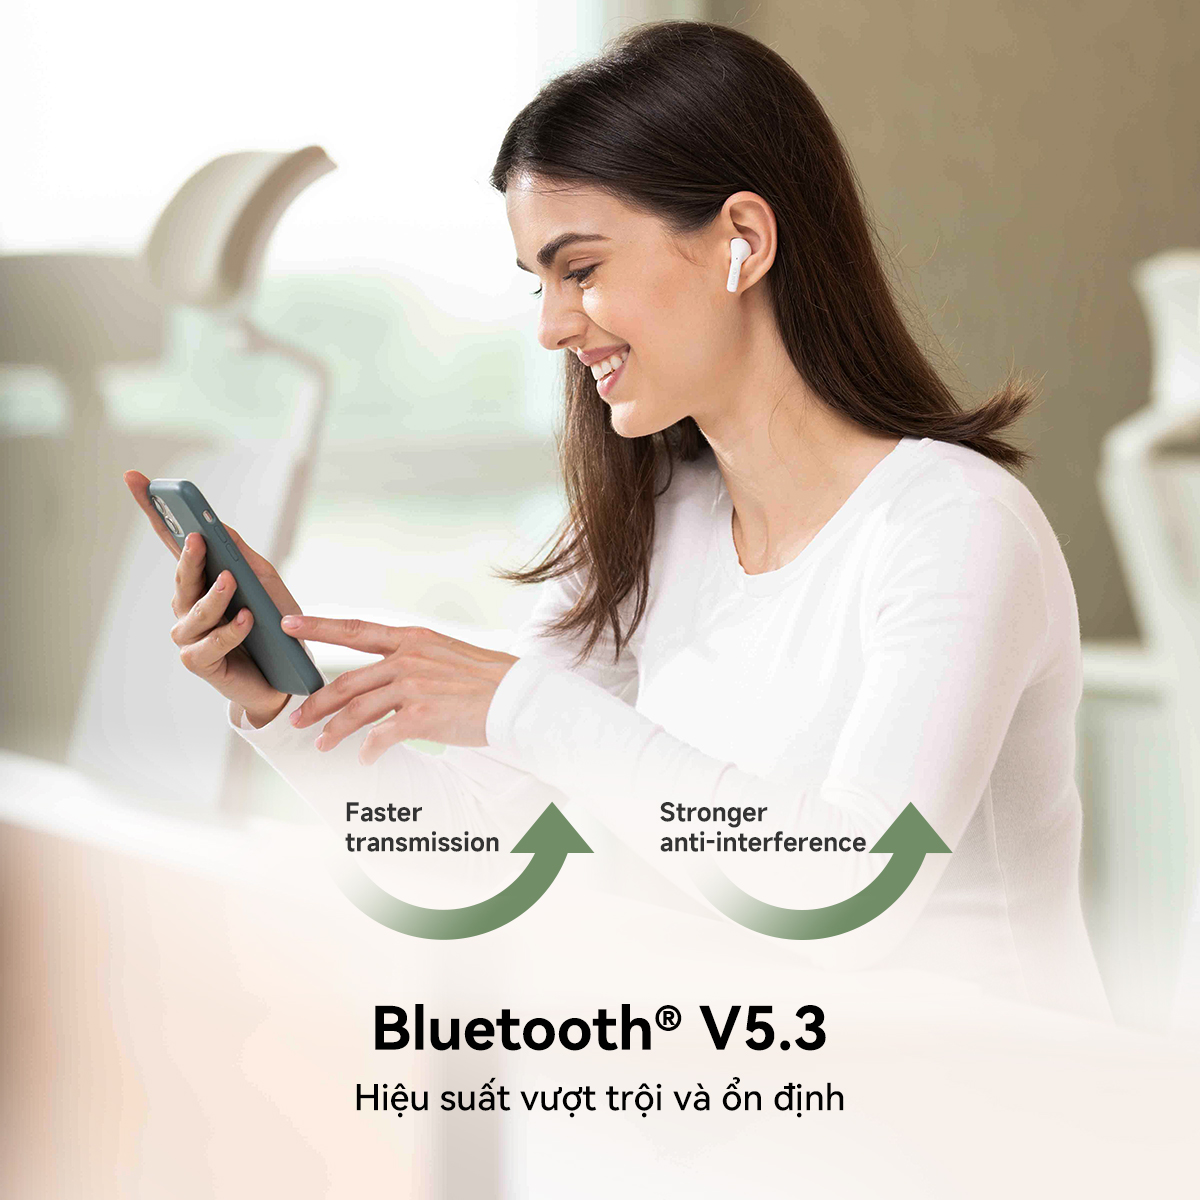 Tai nghe Edifier X2/X2s không dây Bluetooth 5.3 - Khử tiếng ồn bằng công nghệ AI, chống nước IP54, có chế độ chơi game, THỜI GIAN SỬ DỤNG LÊN TỚI 26 GIỜ